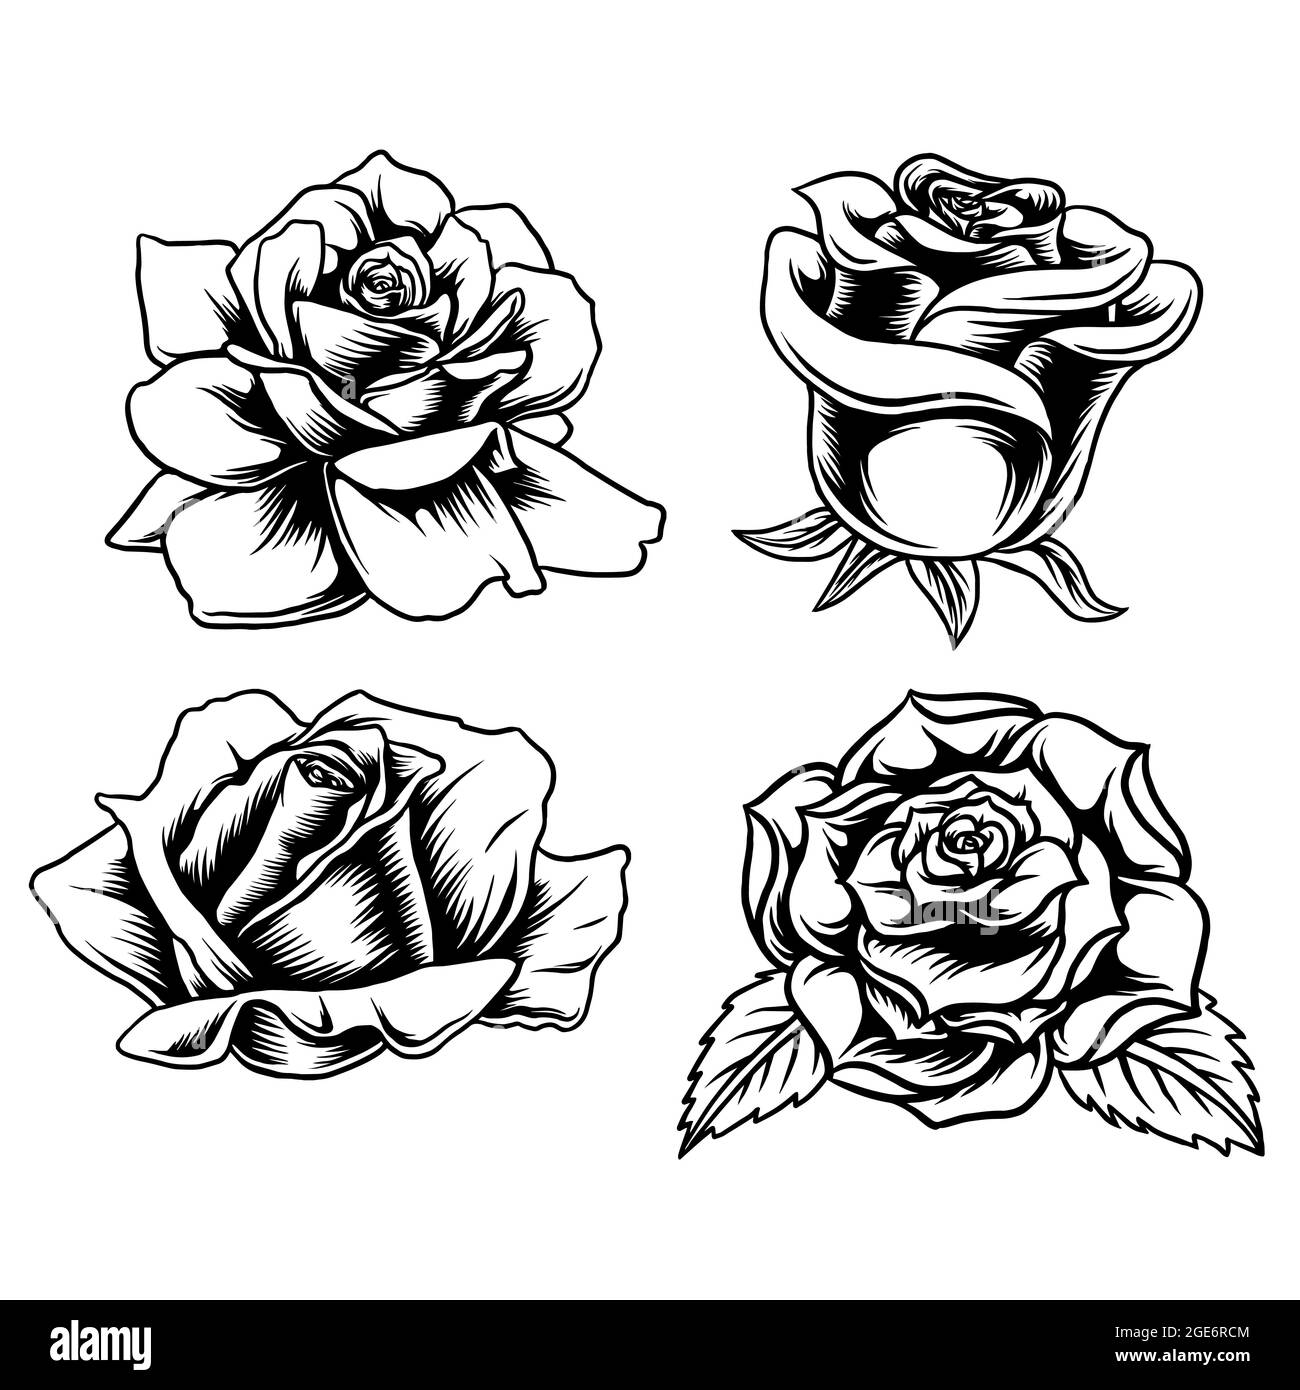 Drawing of rose tattoo immagini e fotografie stock ad alta risoluzione -  Pagina 2 - Alamy